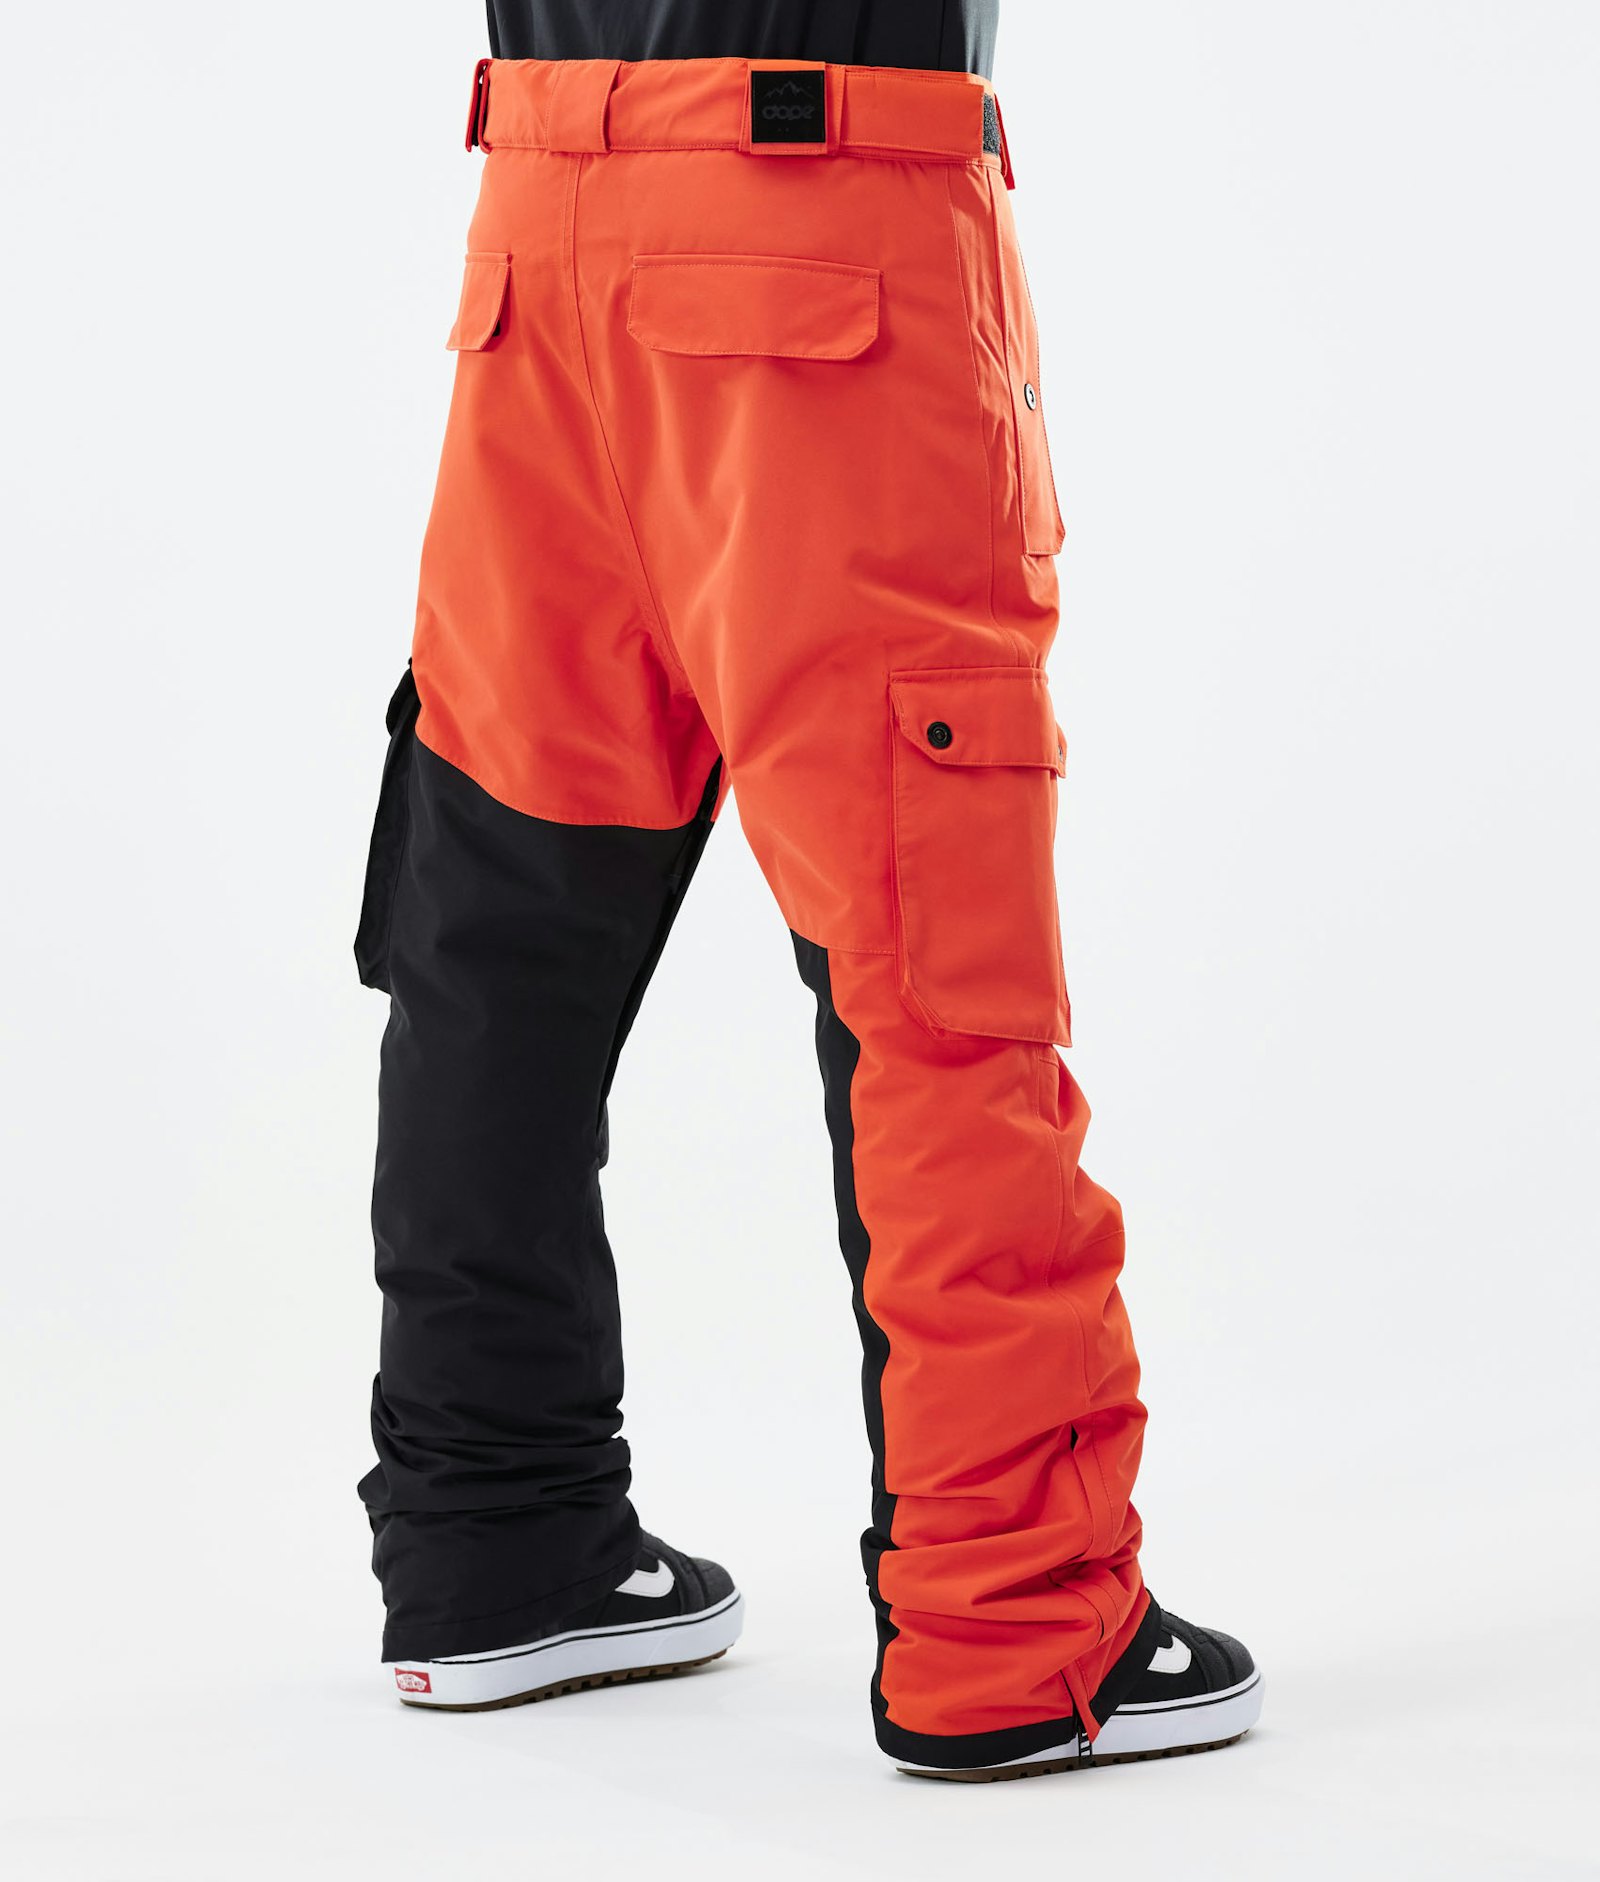 Dope Adept 2021 Kalhoty na Snowboard Pánské Orange/Black